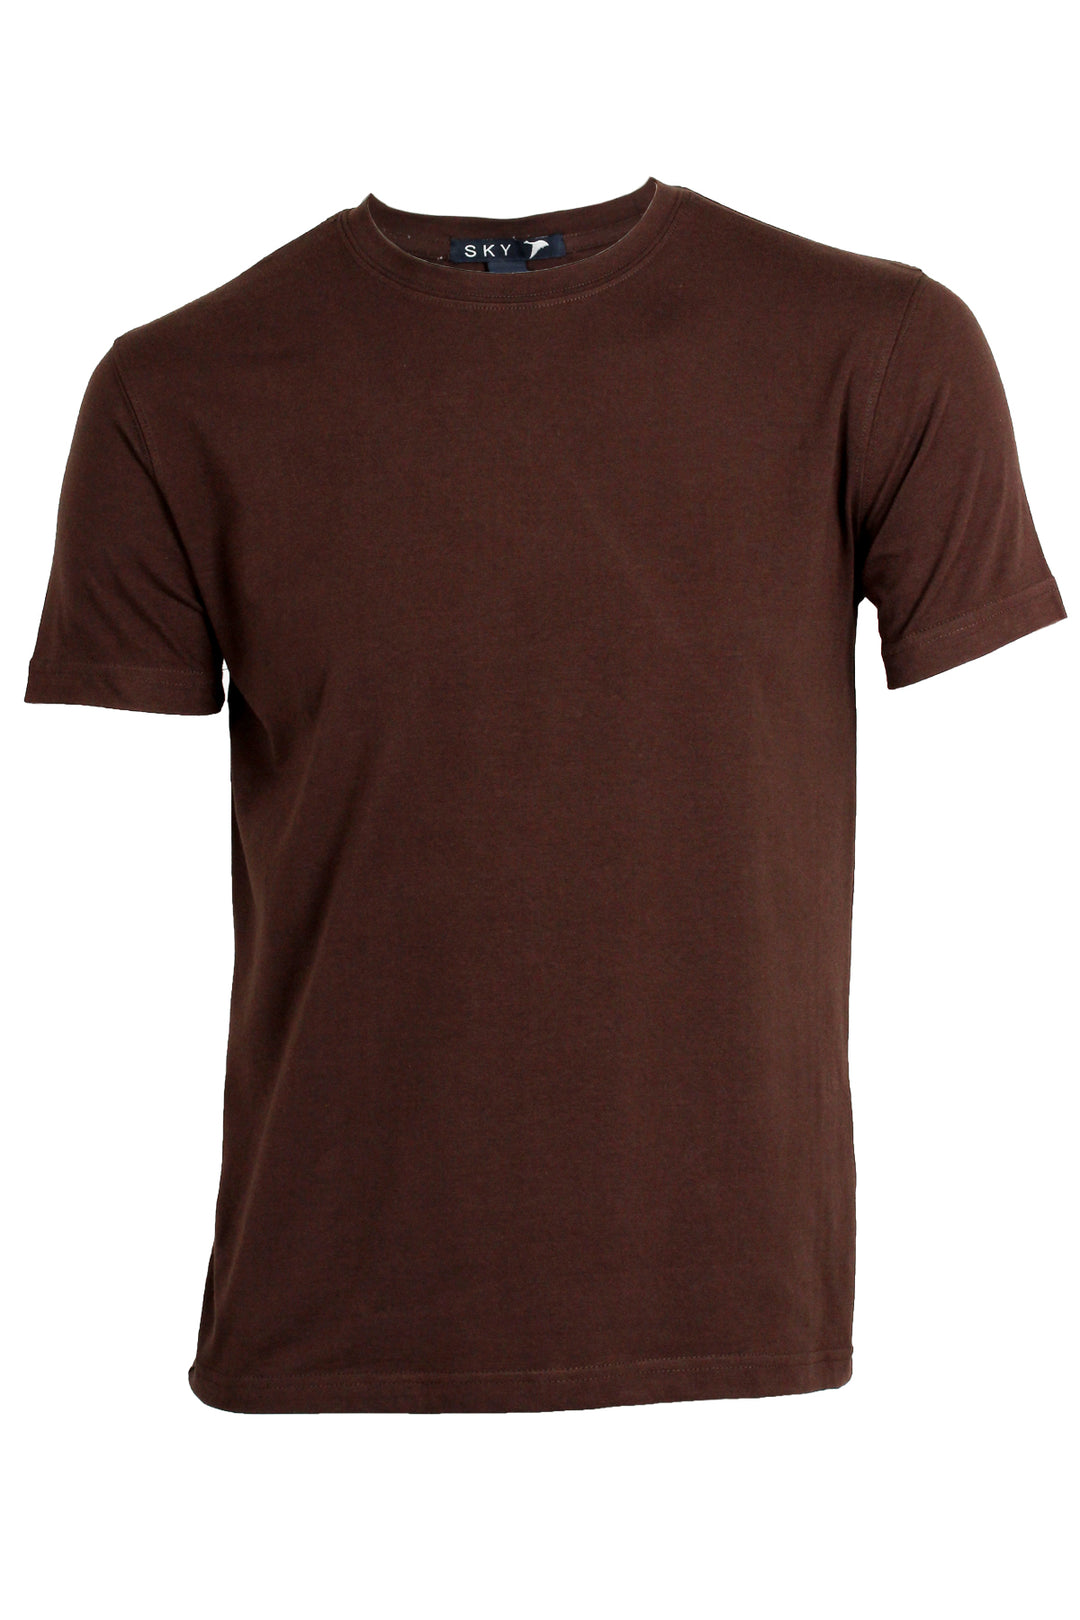 T-shirt uomo girocollo tinta unita in cotone elasticizzato